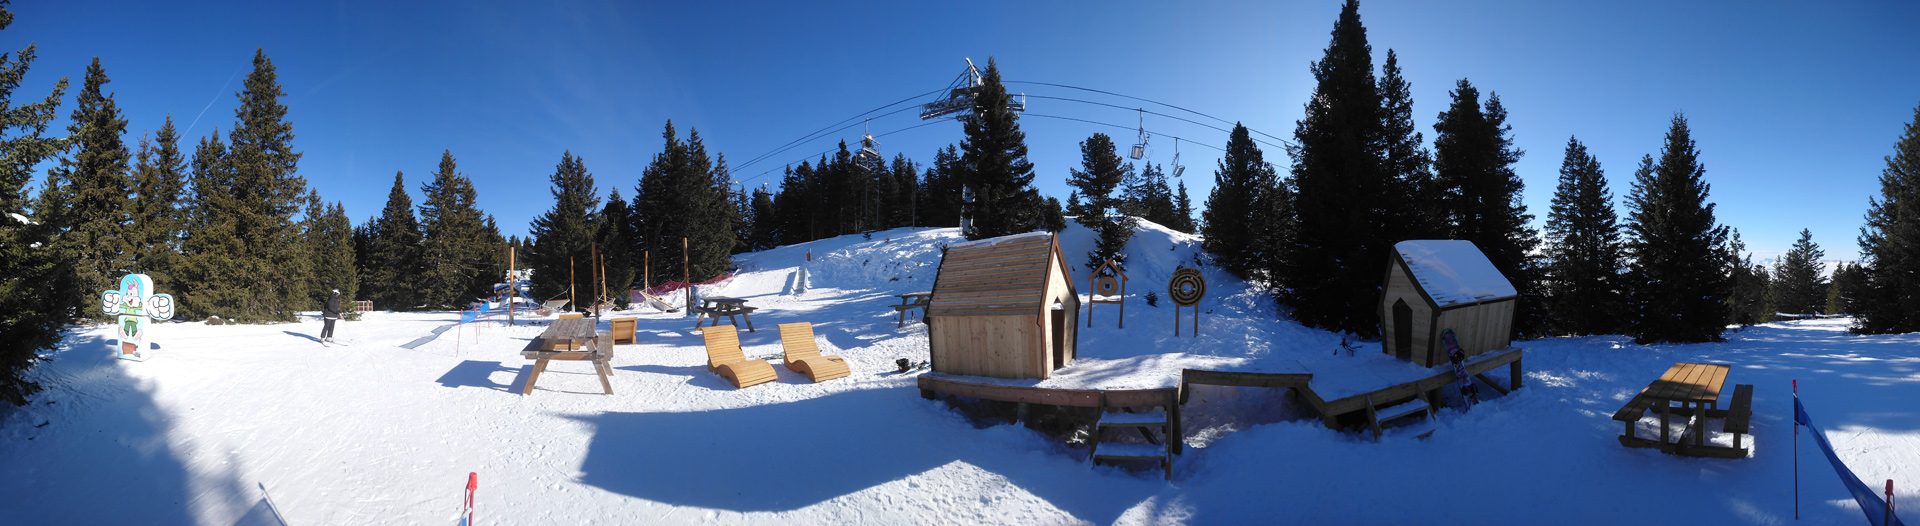 Chamrousse montagne de téo nouvelle zone détente piste ski ludique famille enfant station grenoble isère alpes france - © SD - OT Chamrousse